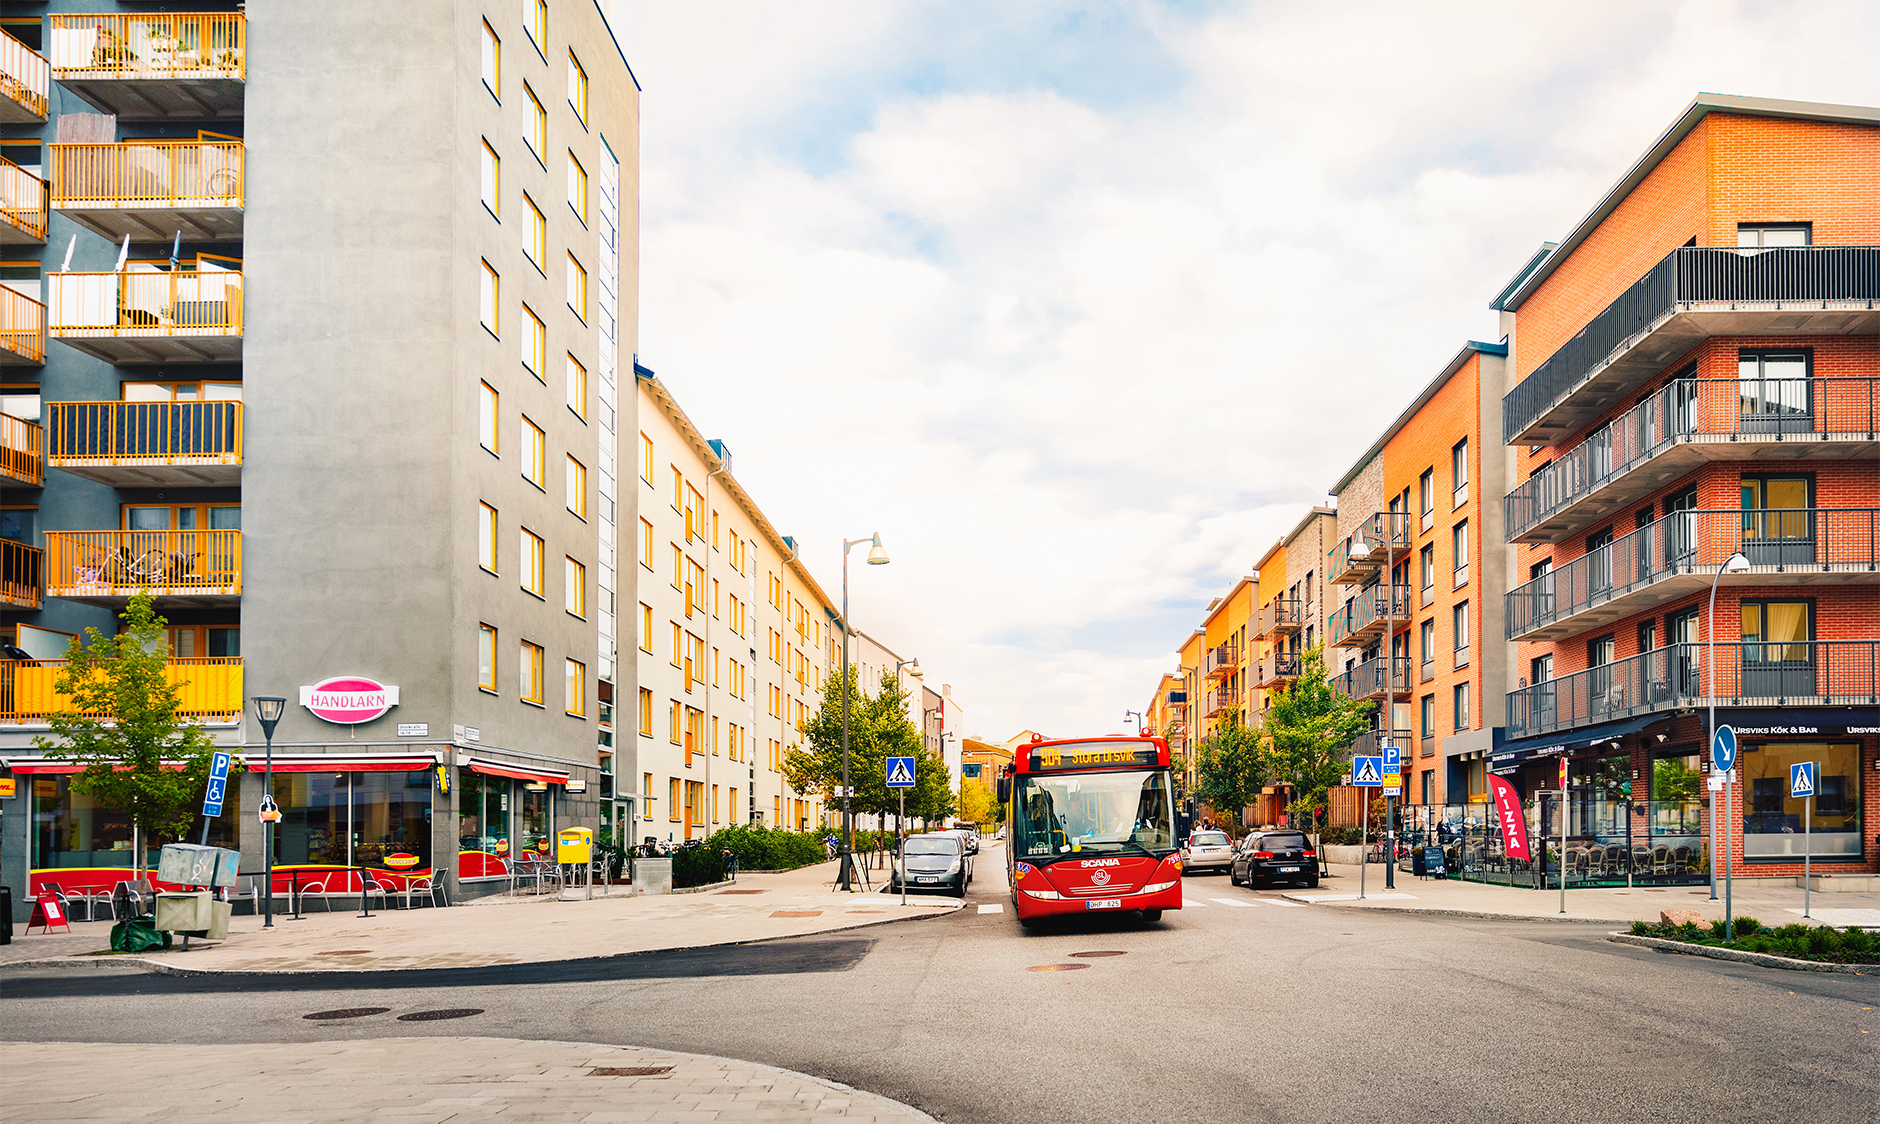 Du når Ursvik via buss, bil och cykel. År 2022 står den nya tvärbanan klar som förbinder Ursvik med Kista och Bromma.